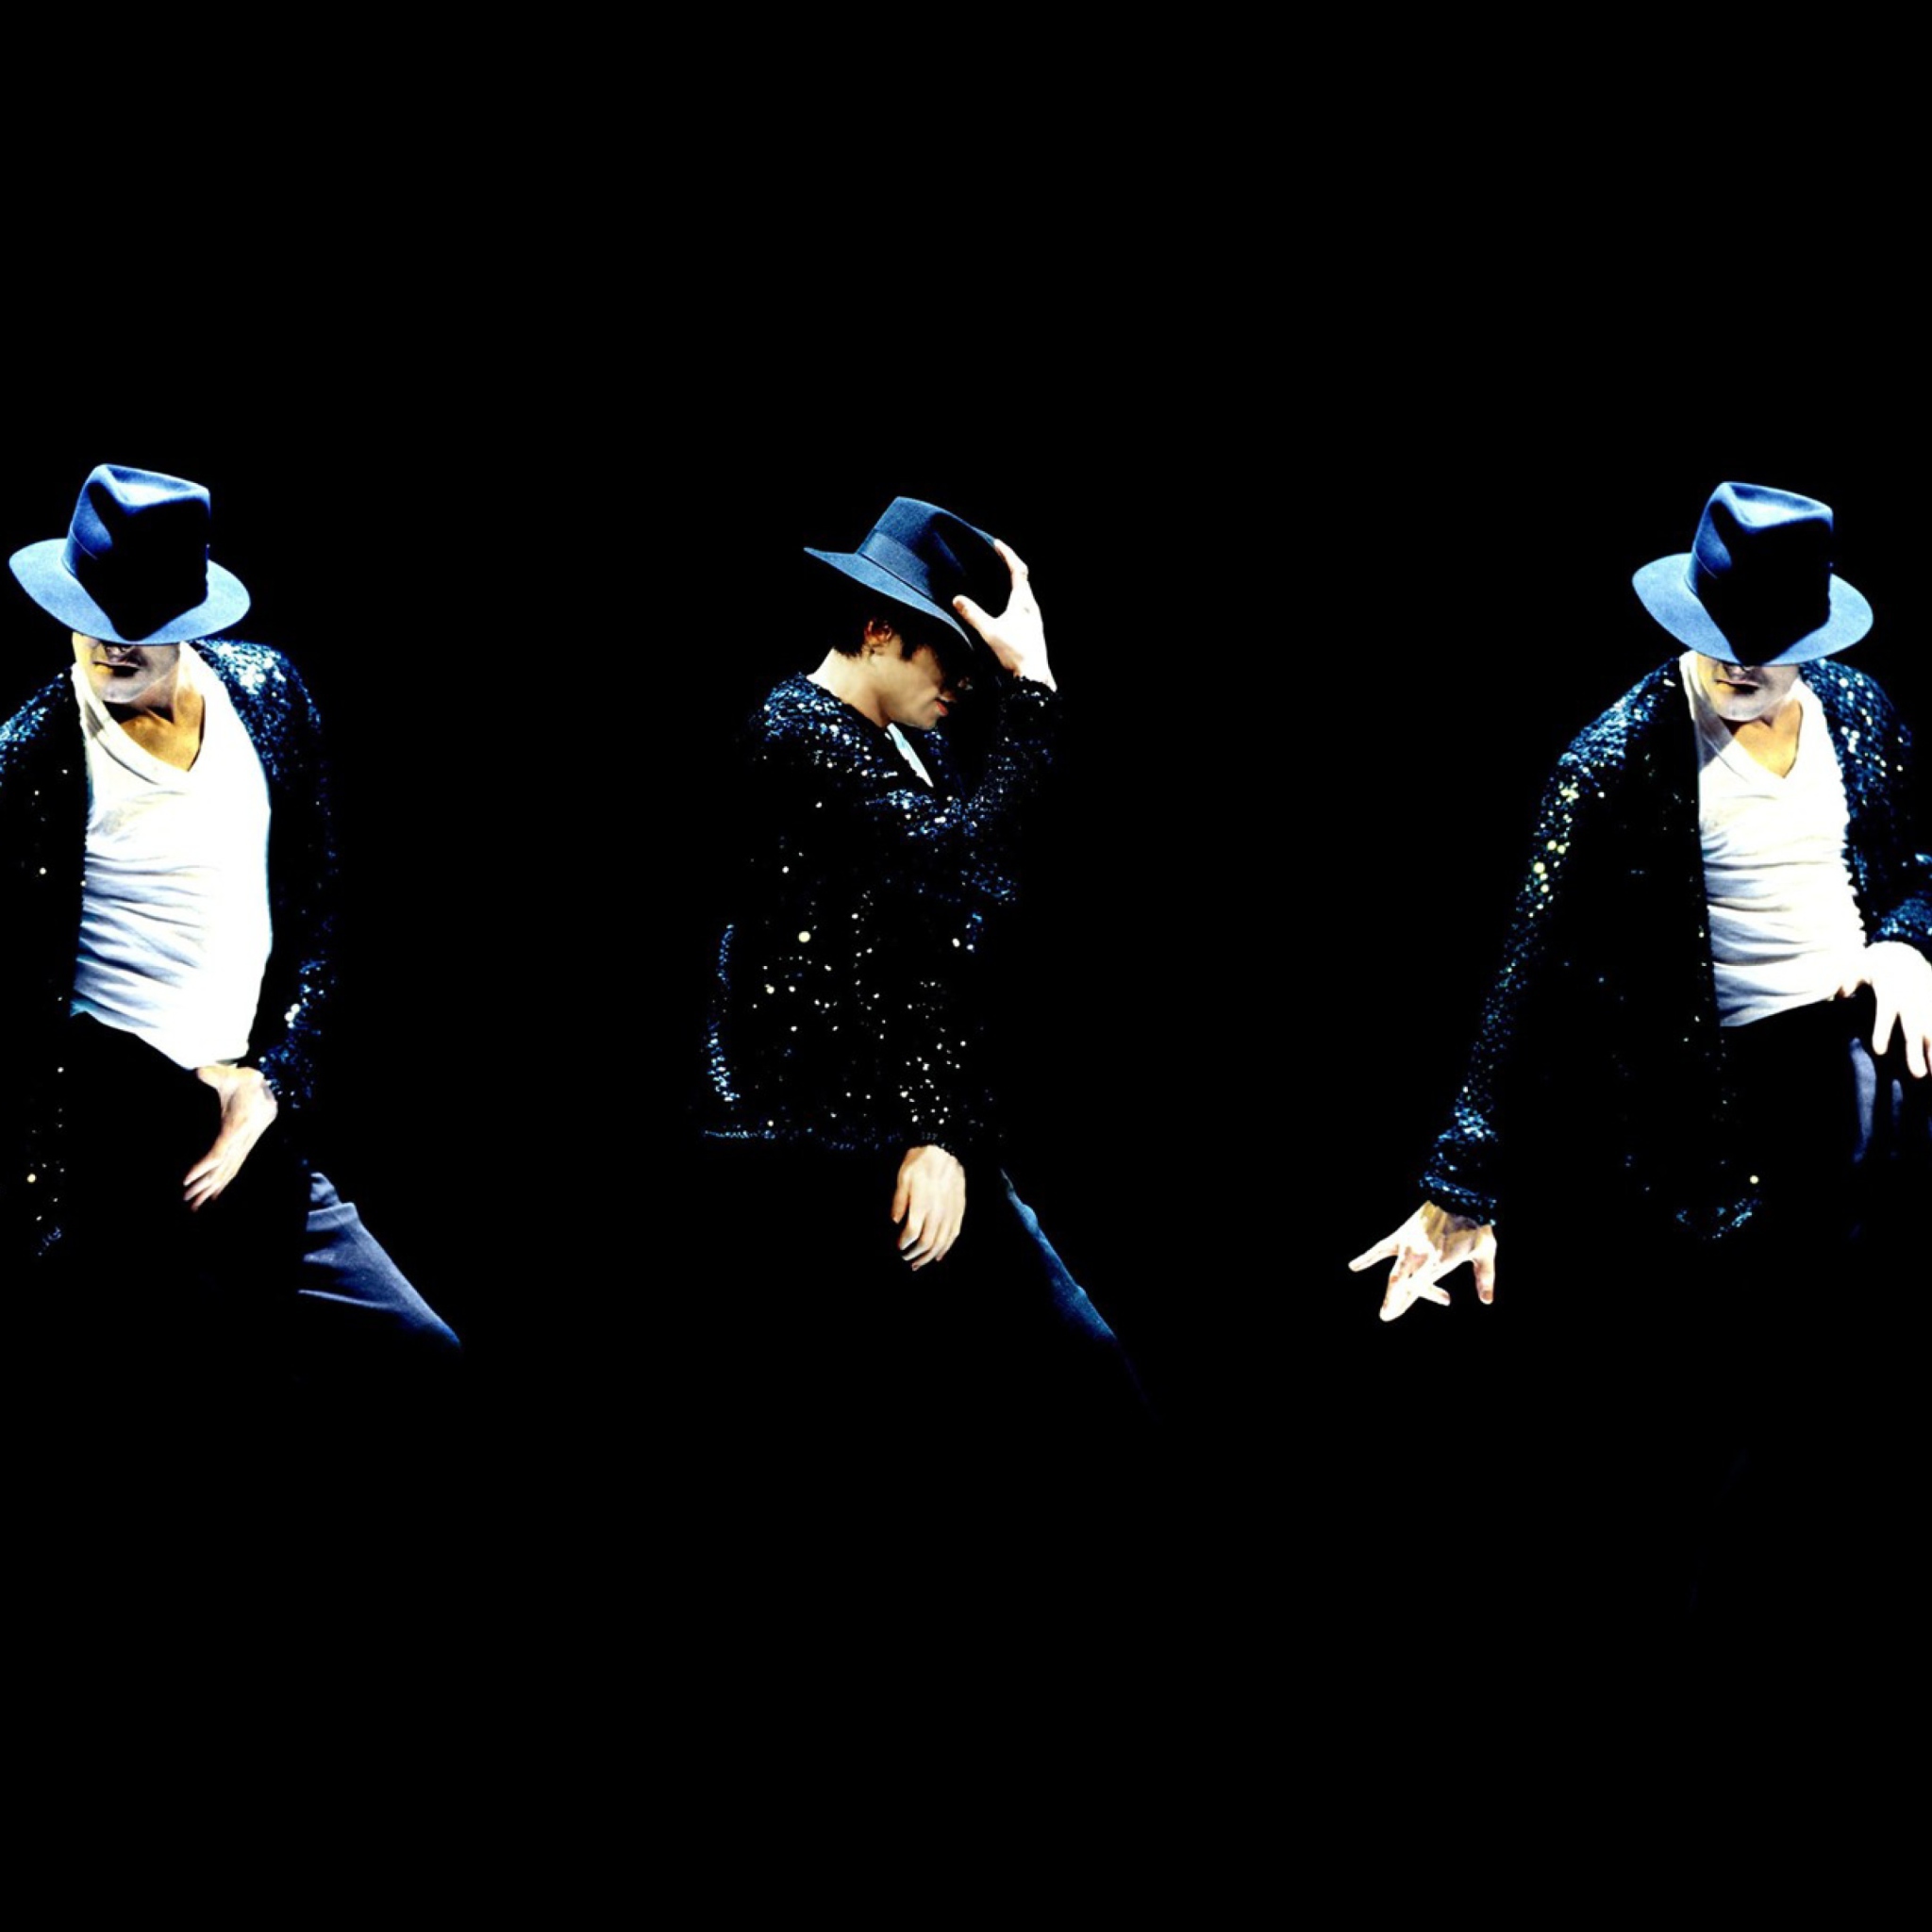 Das Michael Jackson Wallpaper 2048x2048